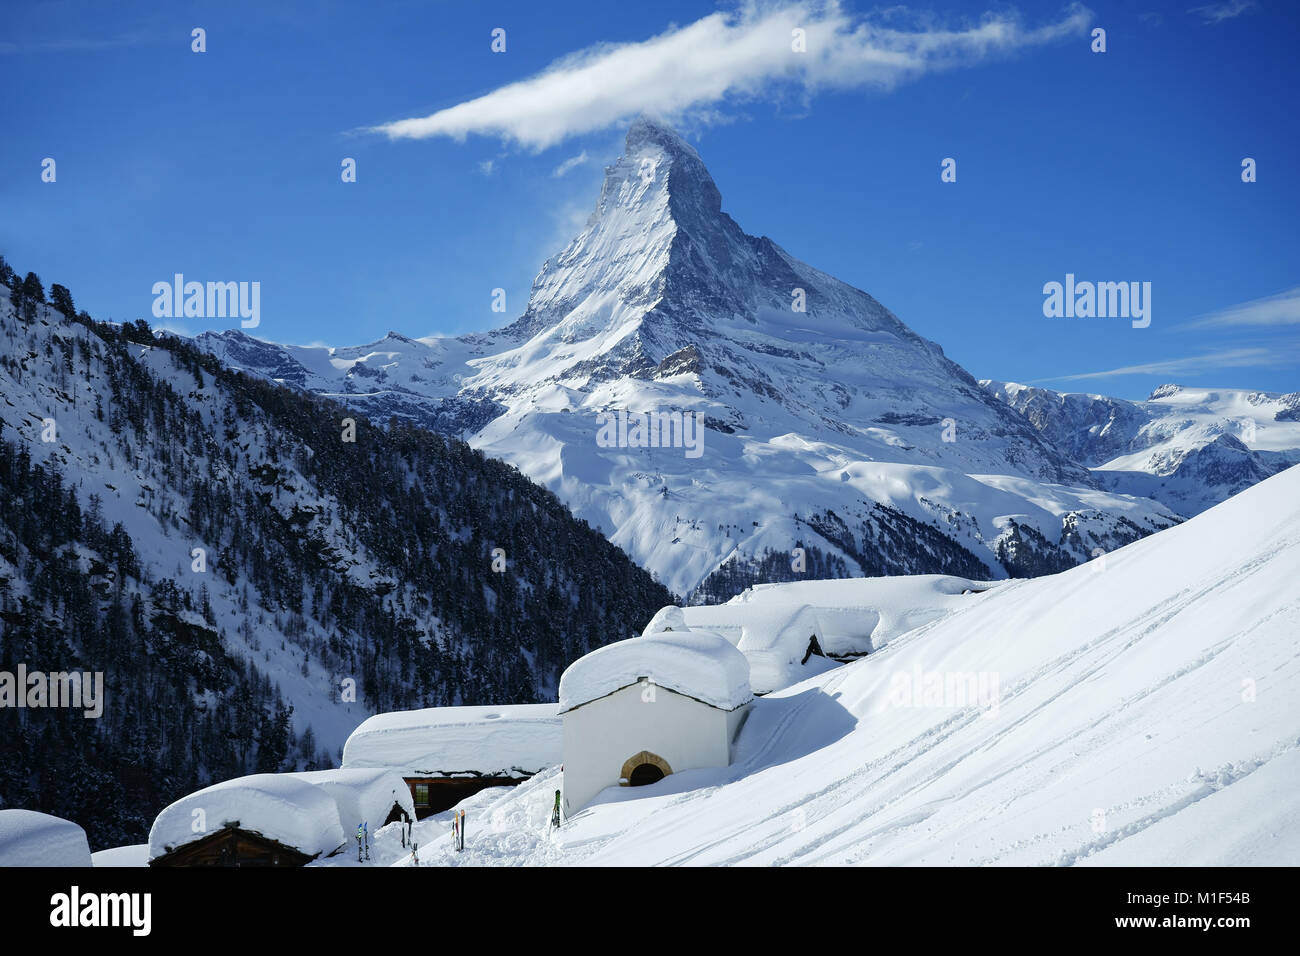 Alpine village Findeln below Sunnegga, Zermatt with Matterhorn, winter, Valais alps, Switzerland Stock Photo